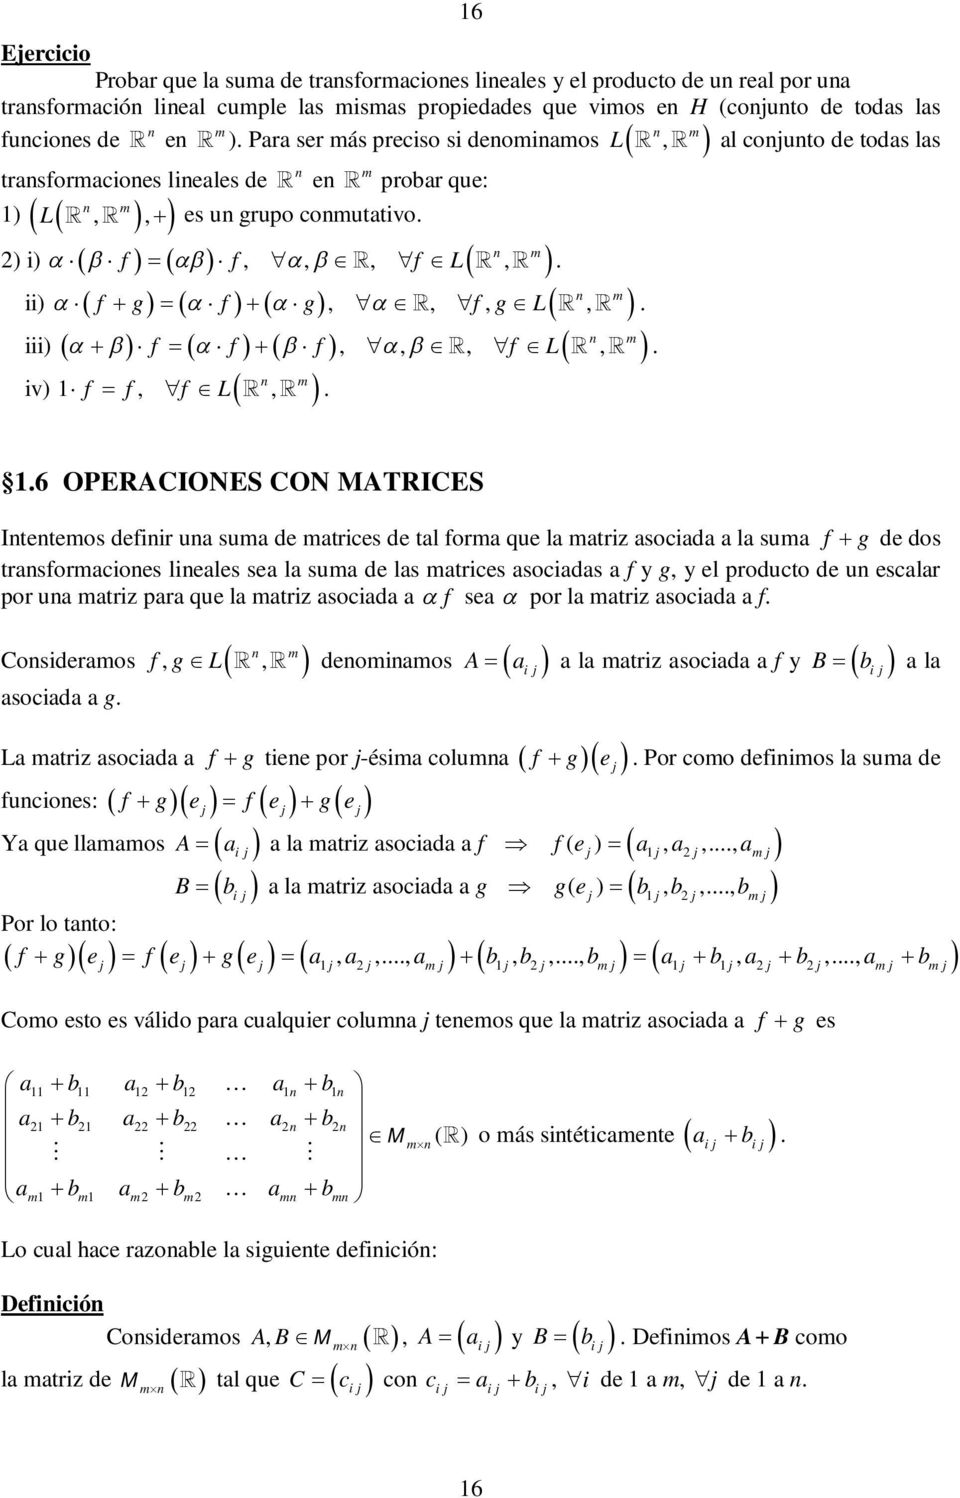 L, 6 OPERACIONES CON MATRICES Itetemos defiir ua suma de matrices de tal forma que la matriz asociada a la suma f g de dos trasformacioes lieales sea la suma de las matrices asociadas a f y g, y el